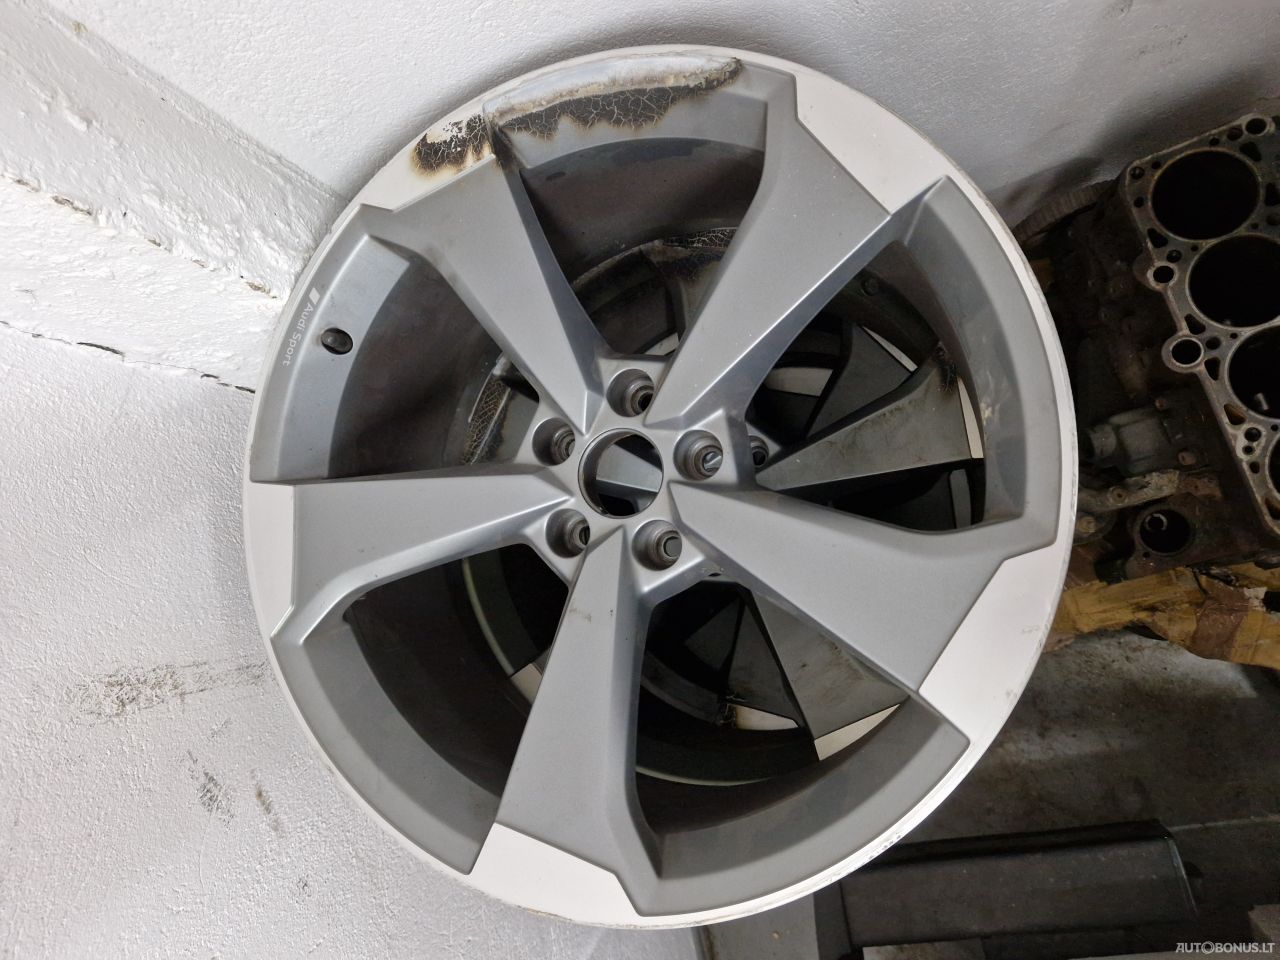 Audi Rotor 2 литые диски